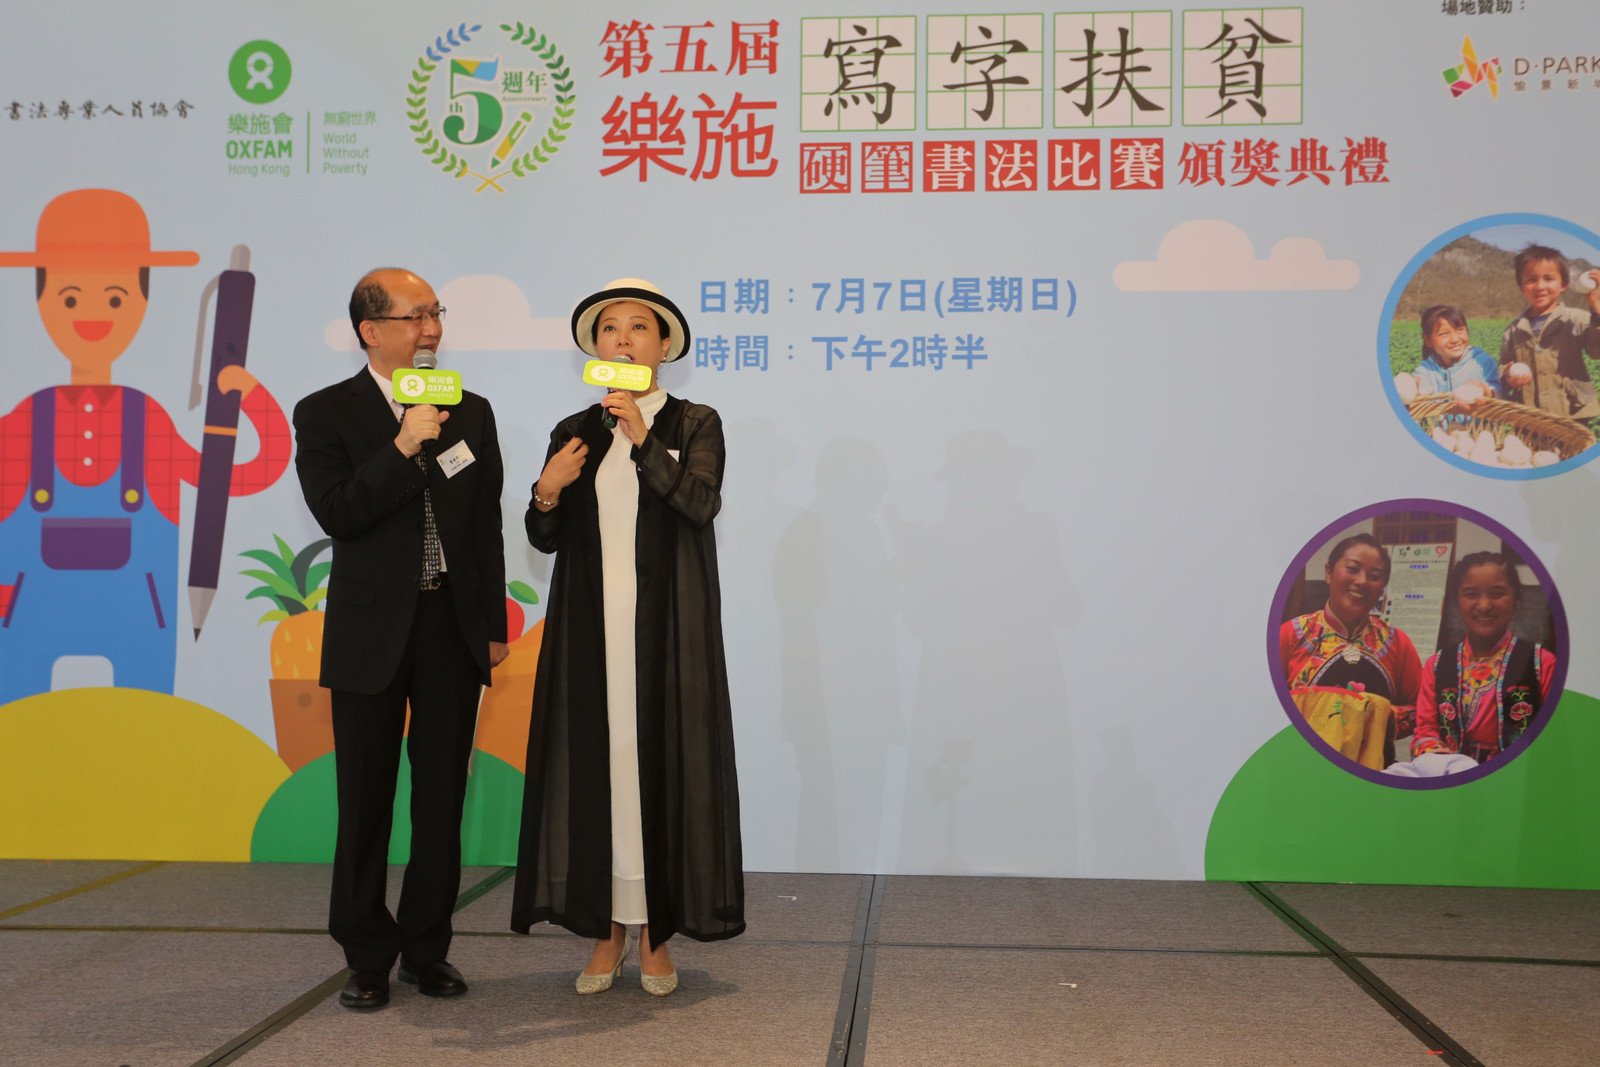 著名节目监制及主持王明青(右)与香港书法专业人员协会主席雷超荣(左)真情对话